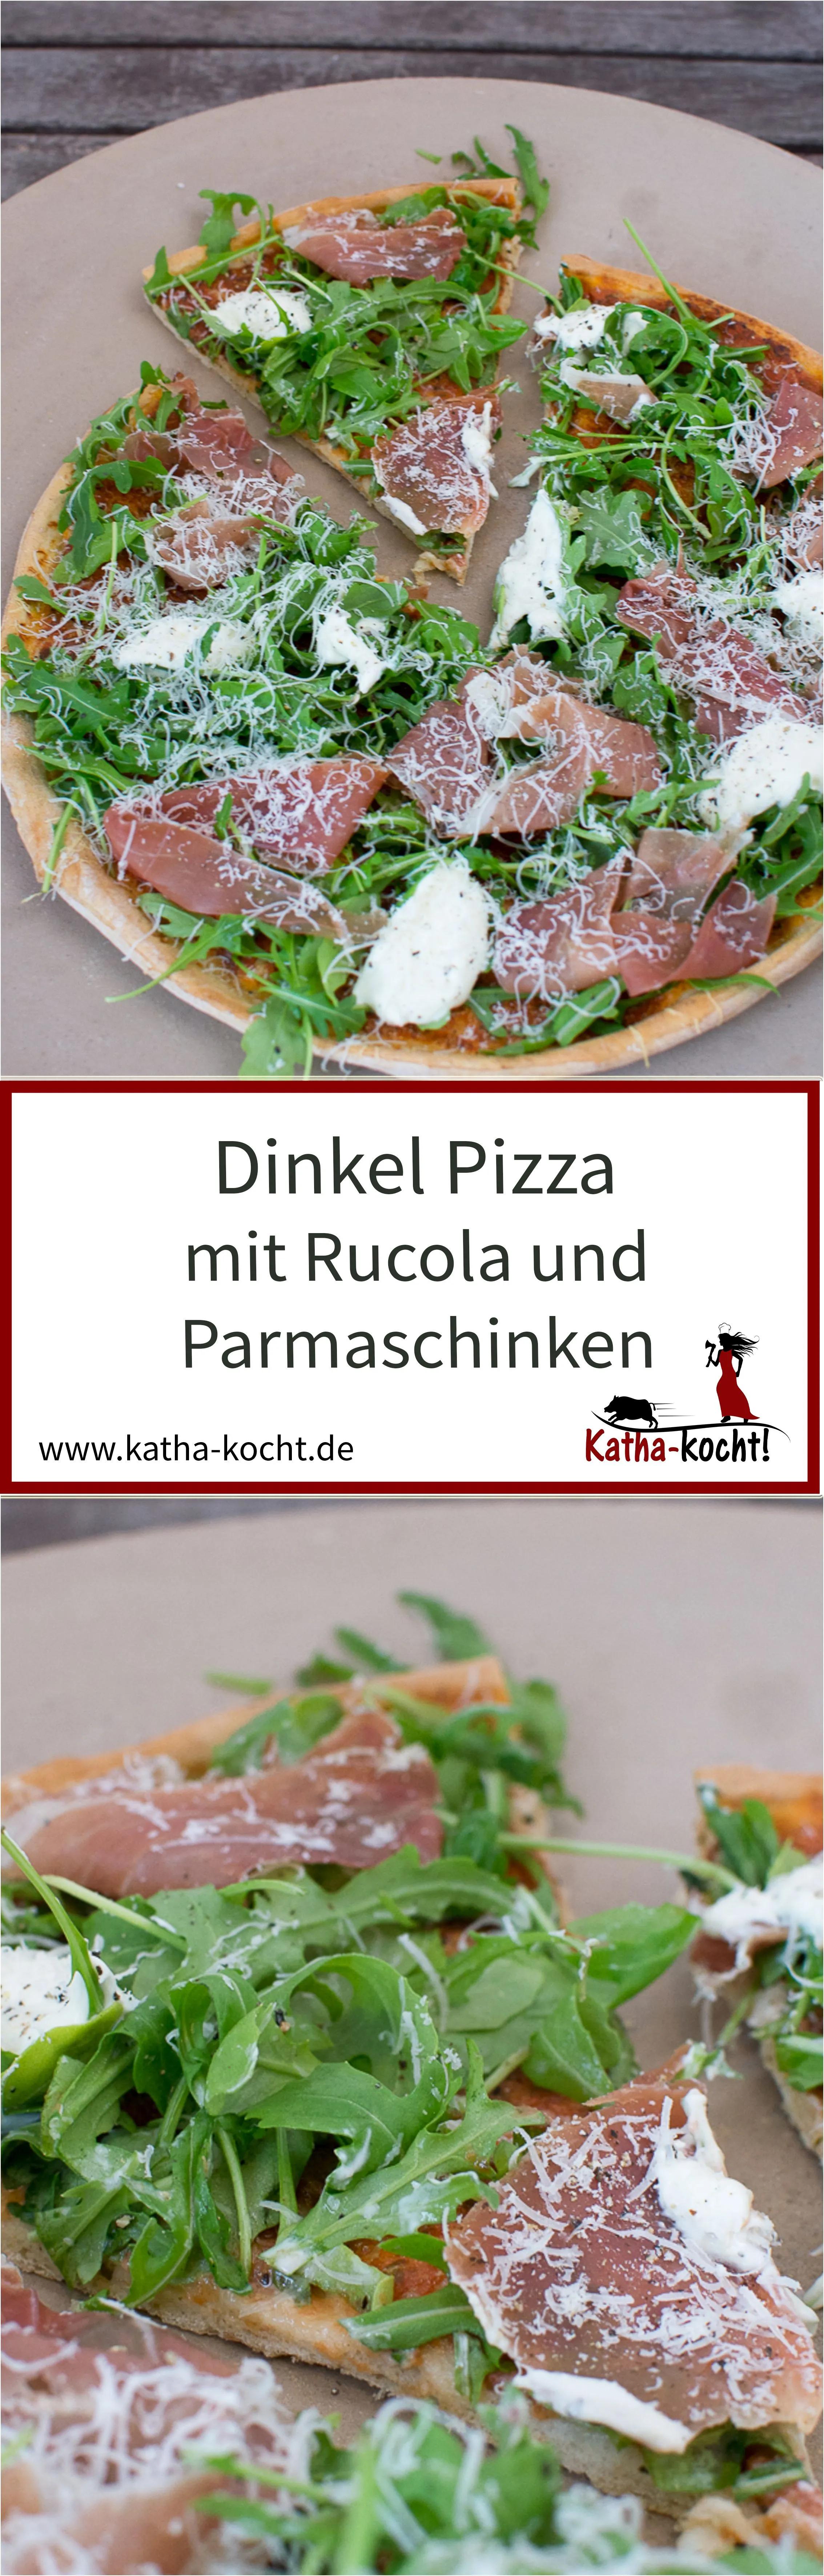 Dinkel Pizza mit Rucola und Parmaschinken - Katha-kocht! | Rucola pizza ...